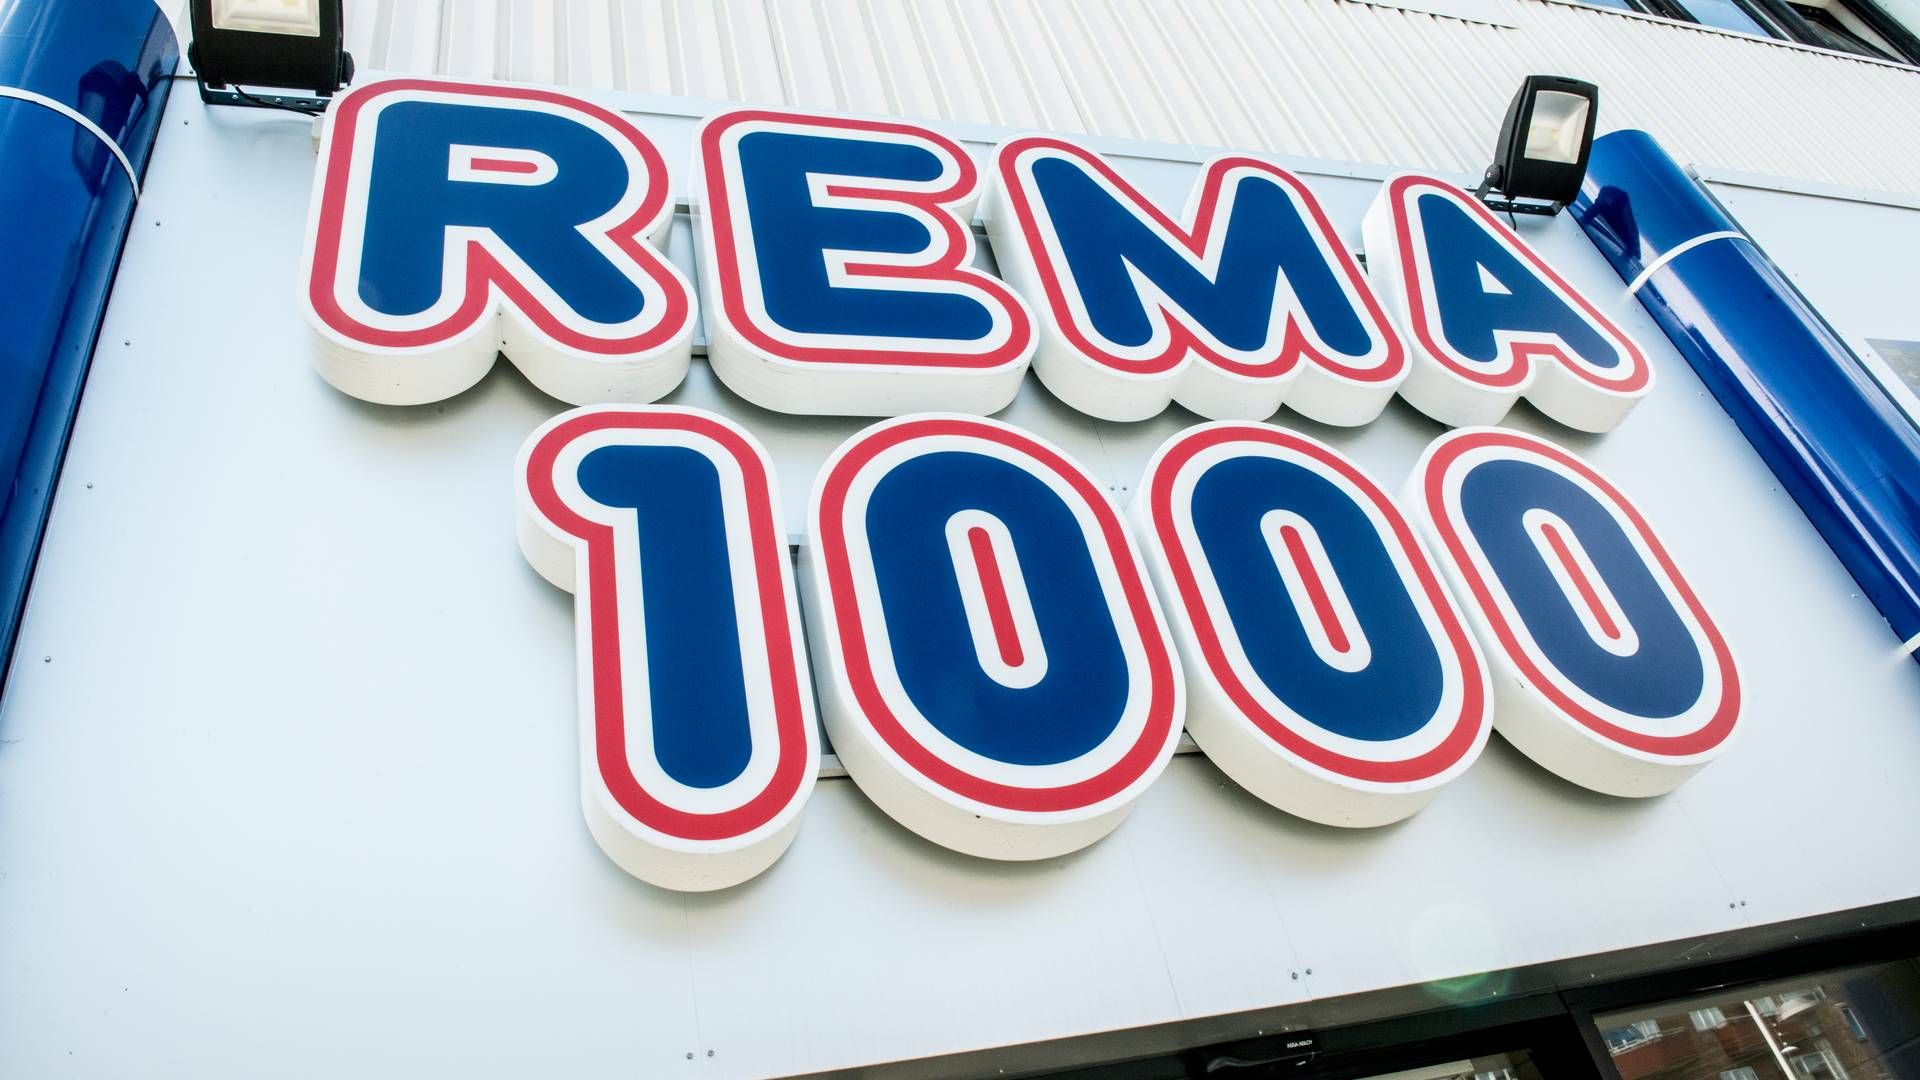 Reitan Retail står blandt andet bag Rema 1000 i Norge og Danmark. | Foto: Linda Johansen